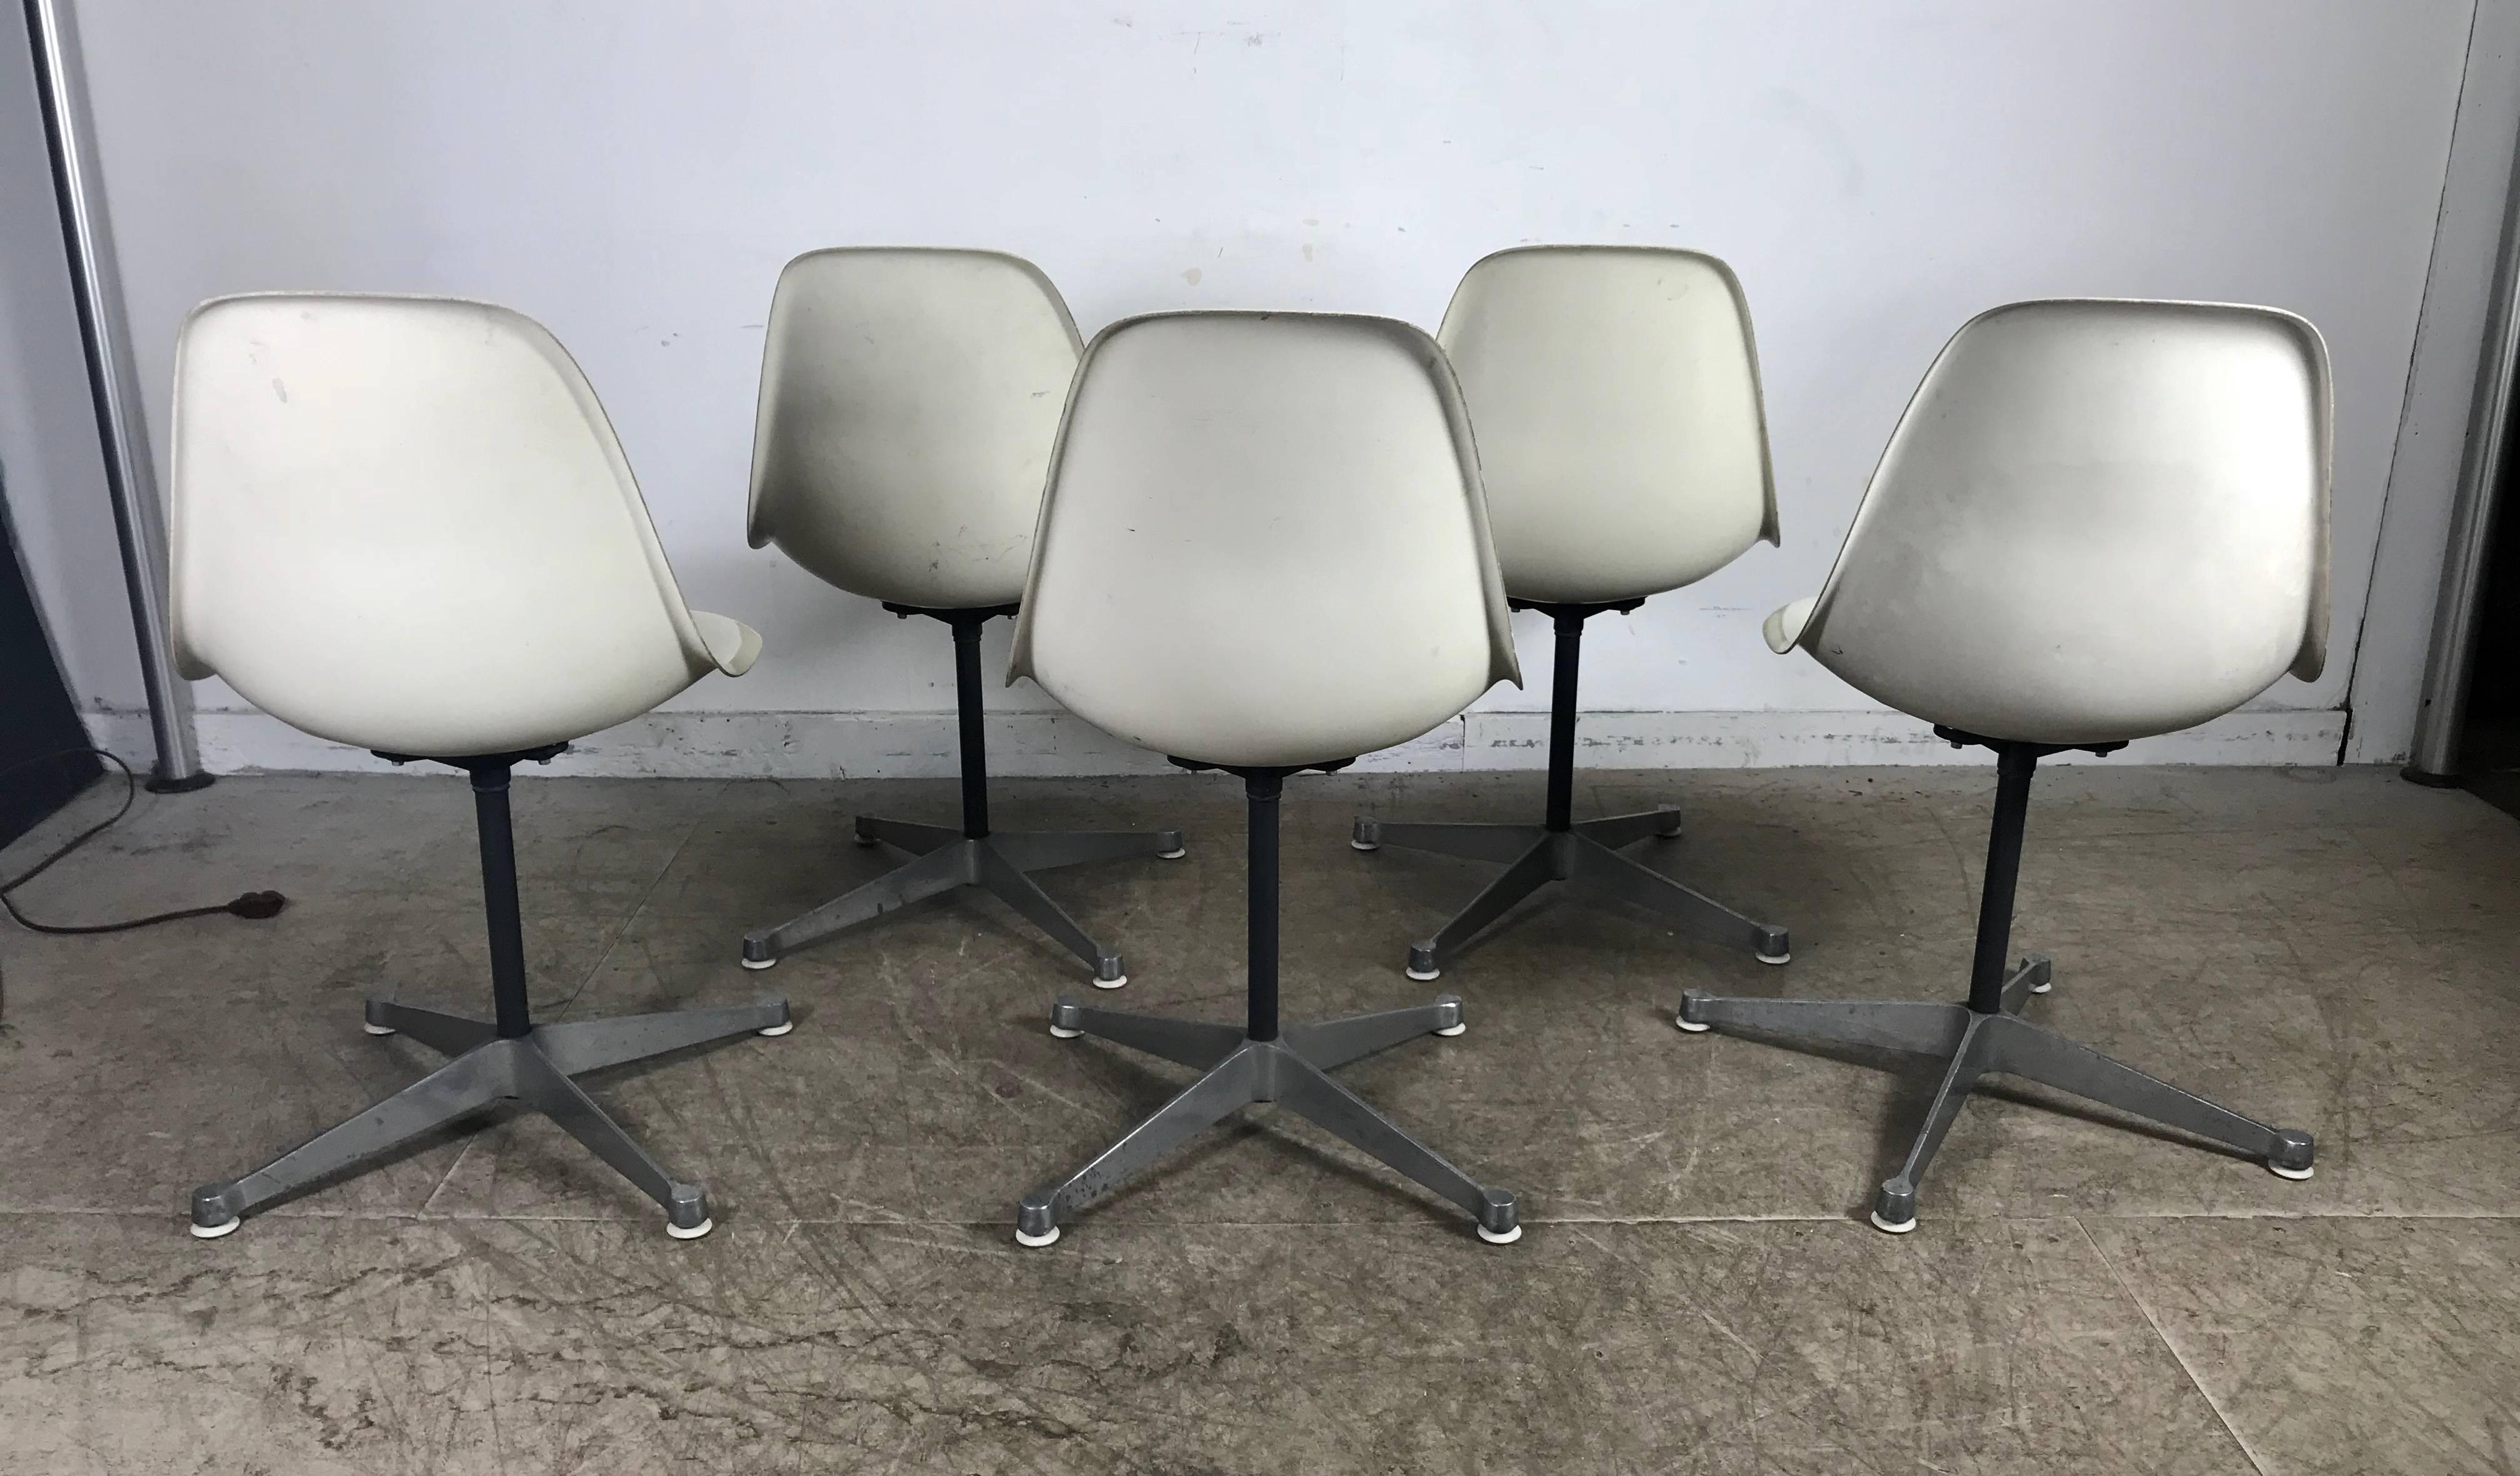 Sechs klassische Mid-Century Modern Stühle aus Fiberglas, entworfen von Charles und Ray Eames, hergestellt von Herman Miller. Bemerkenswerter Zustand für sein Alter, frühes Exemplar, schöne weiße Fiberglas-Seitenschalen auf einem Vier-Sterne-Sockel